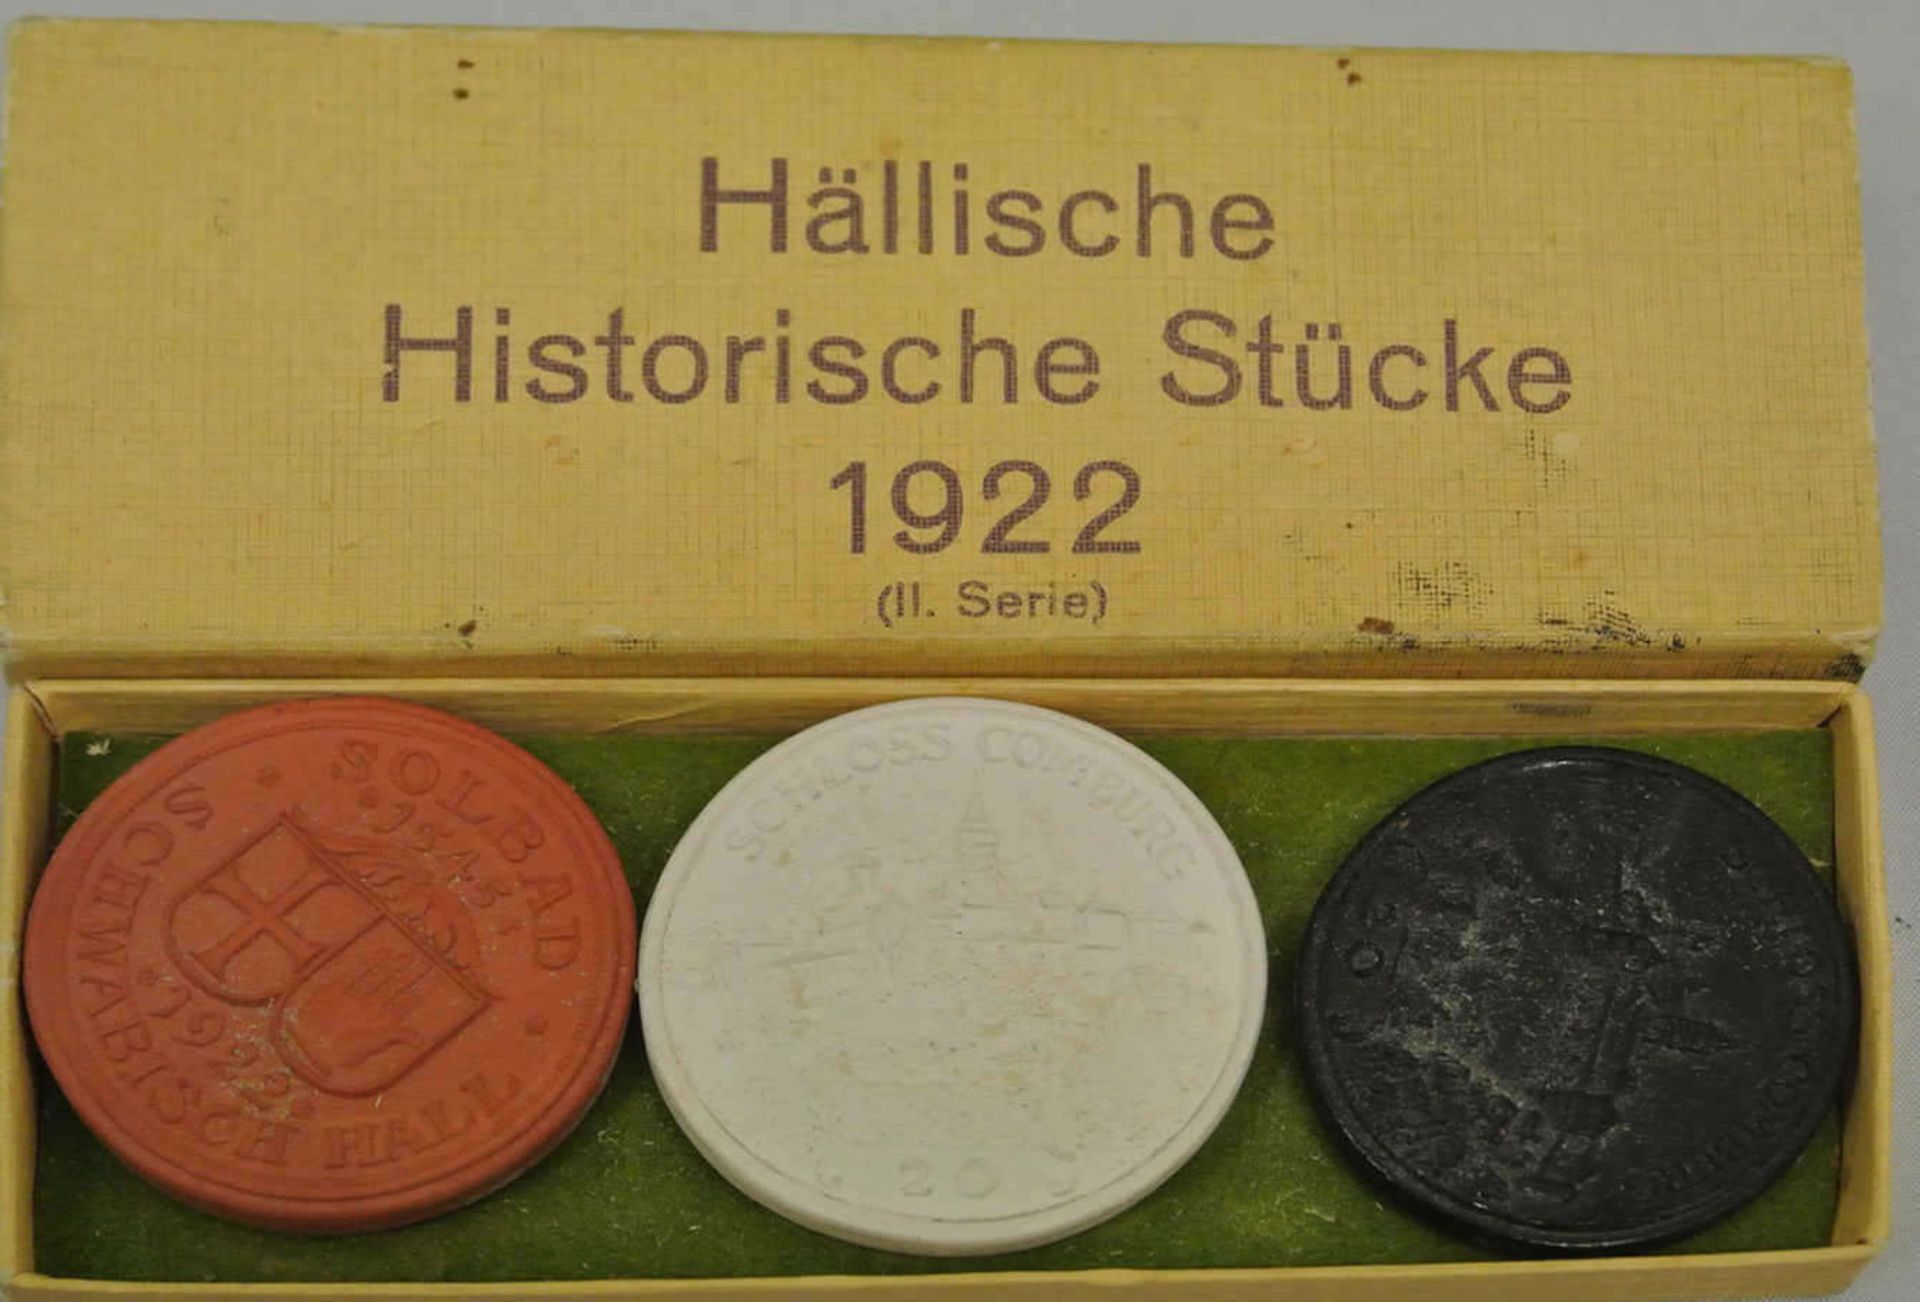 3 Porzellanmedaillen (2. Serie) 1922, Schwäbisch Hall, Hällische Historische Stücke 1922 im Original